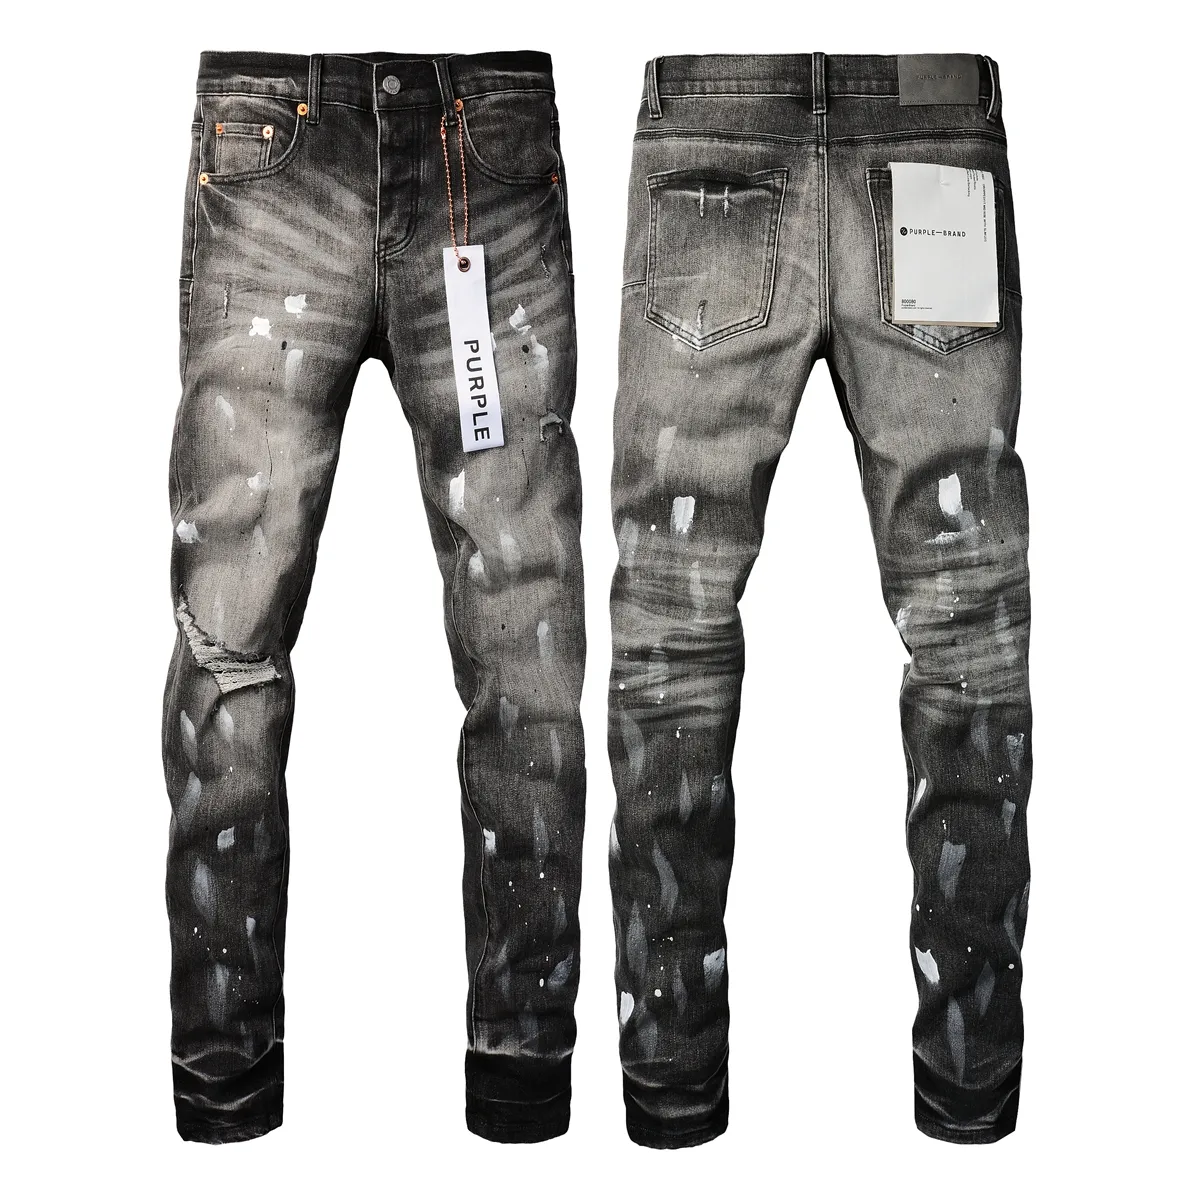 Projektant fioletowe dżinsy dżinsowe spodnie dżinsy designer dżinsy mężczyźni czarne spodnie wysokiej jakości prosta retro Retro Rower Jean Slim Fit Motorcycle Clothingsfez Fez